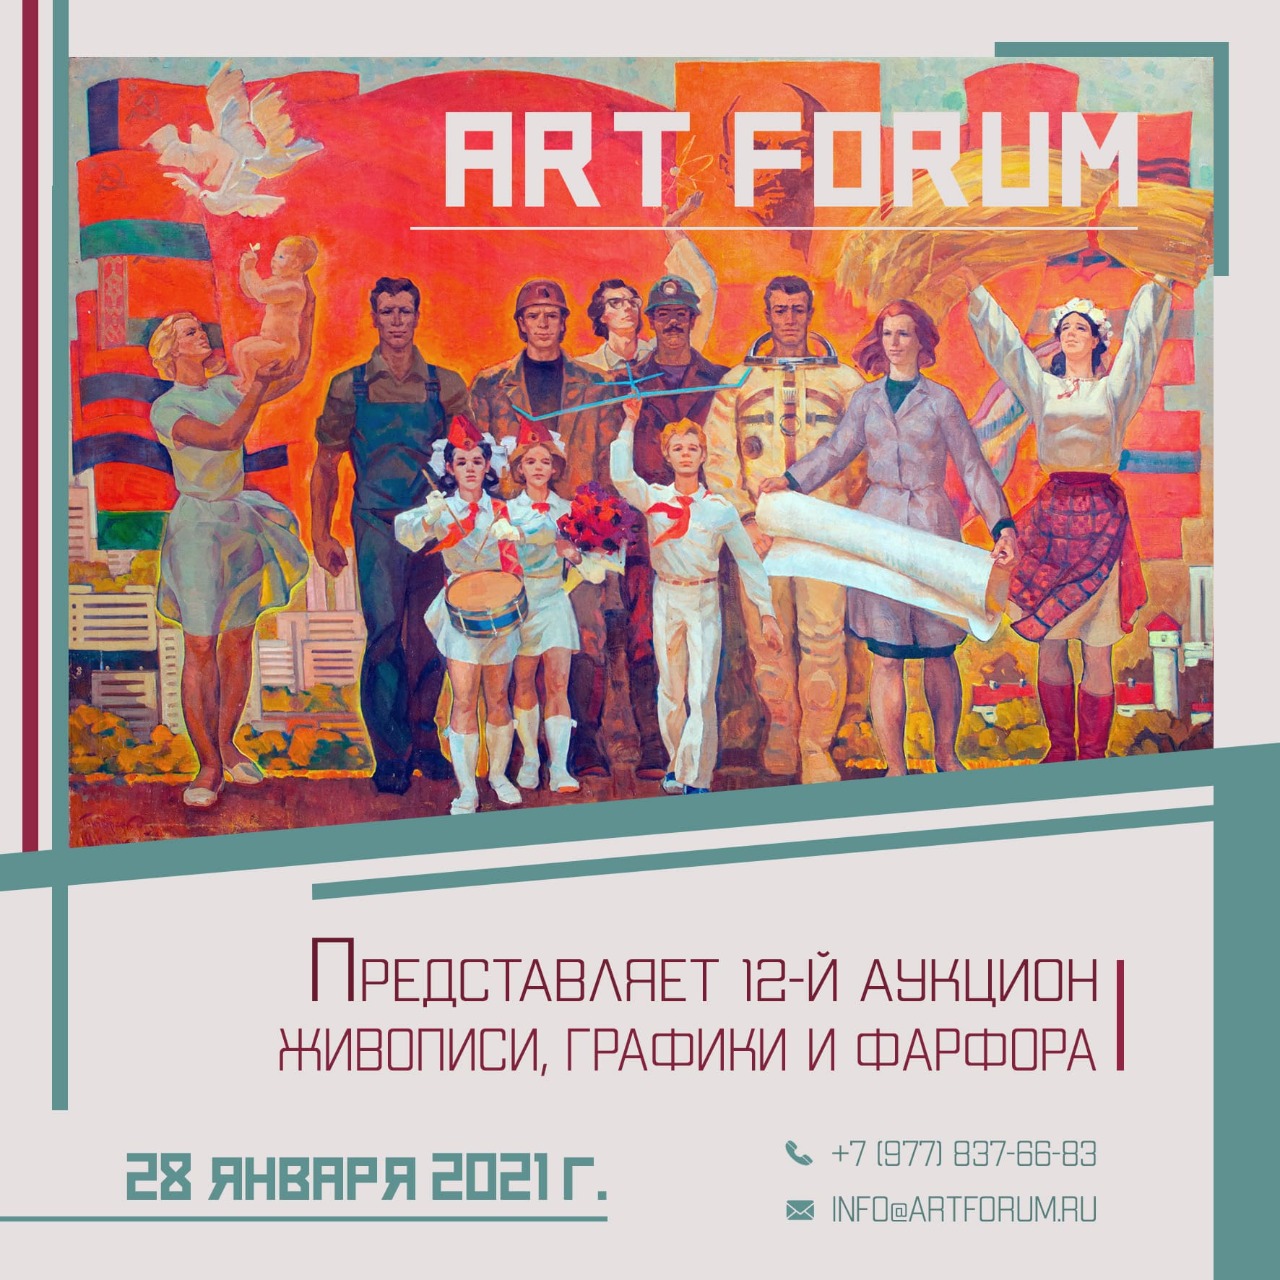 Аукцион № 12 Онлайн аукцион Аукционного дома ArtForum